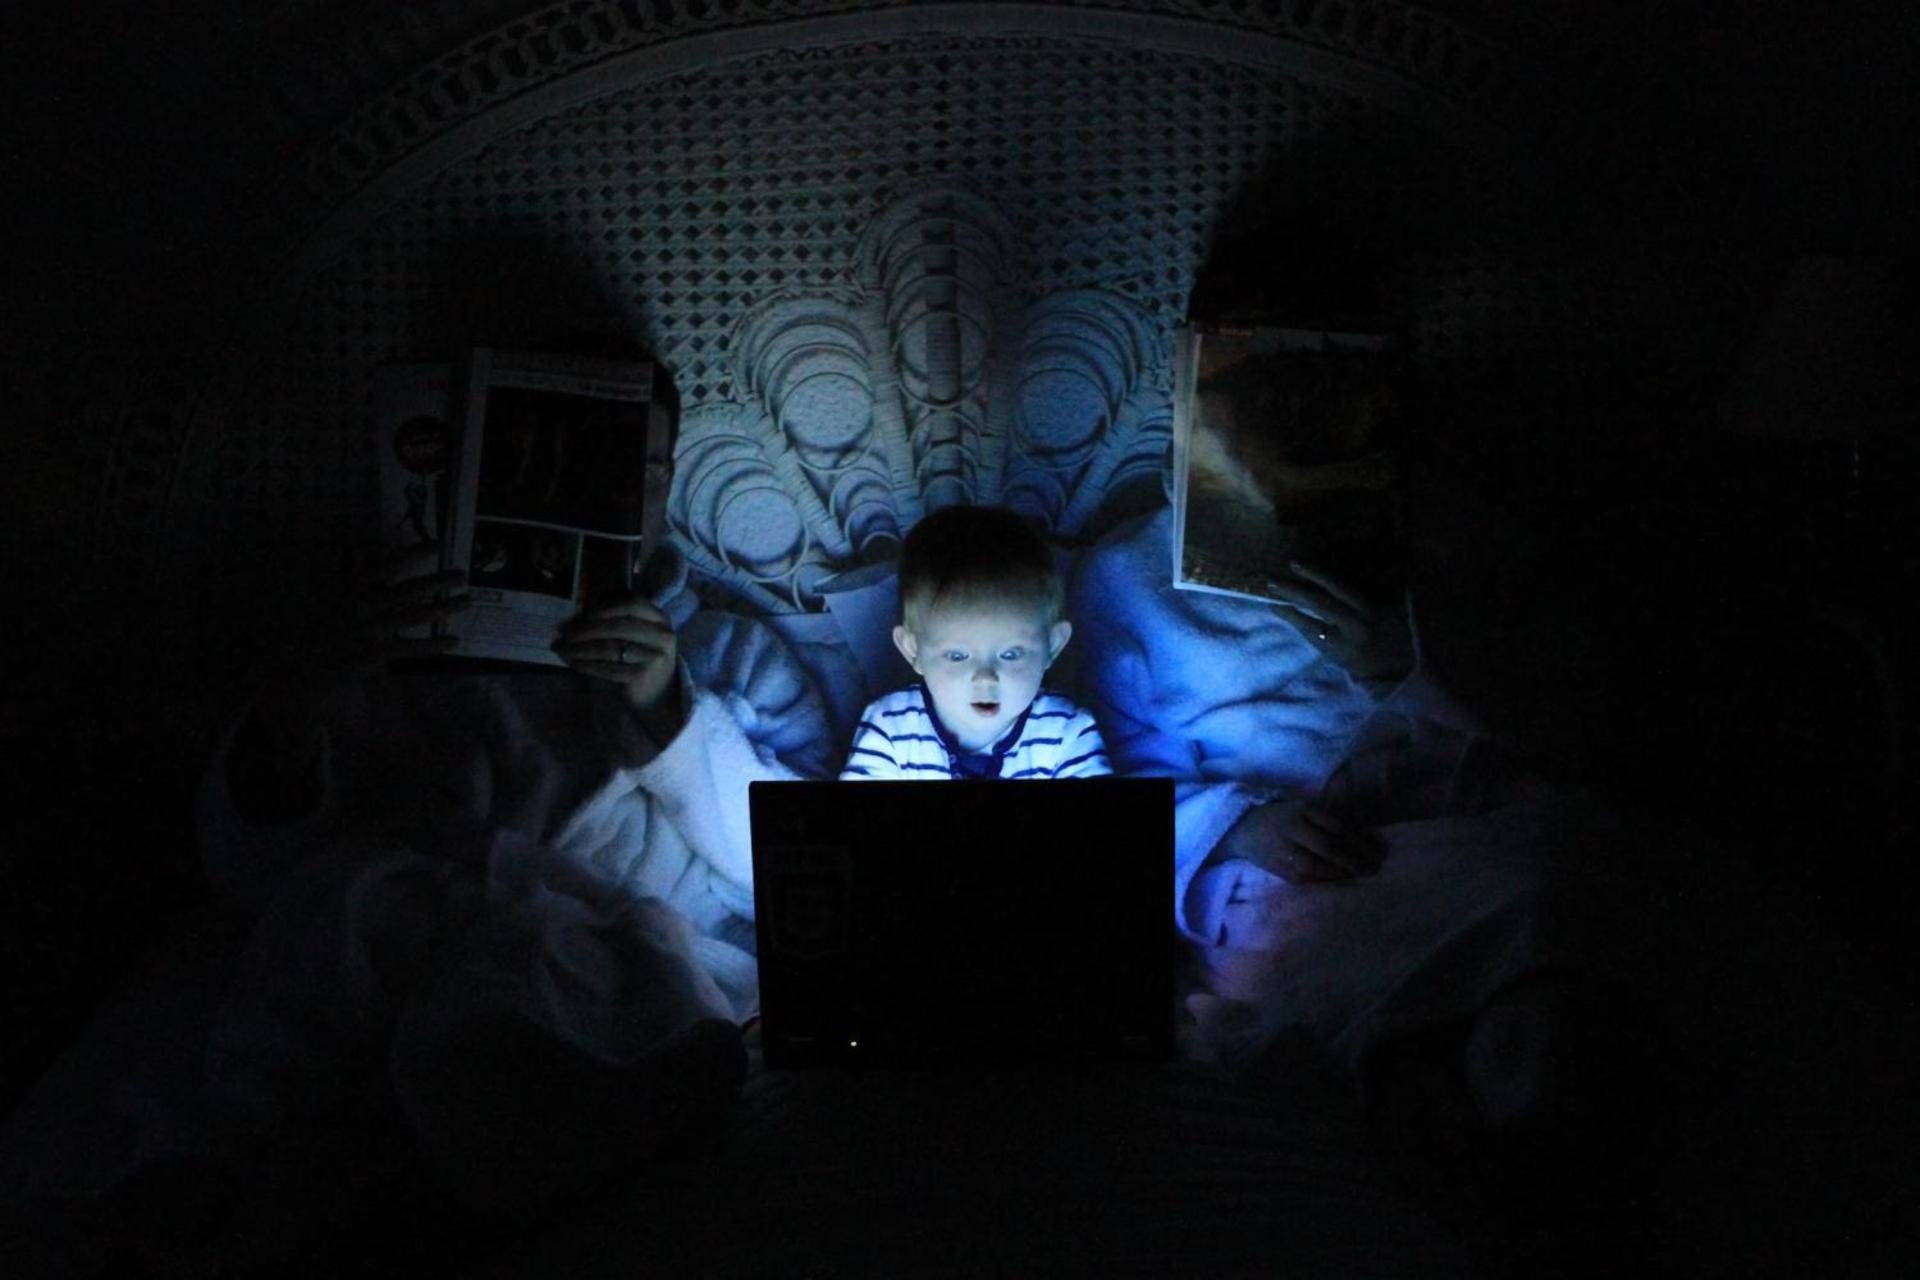 کودک درحال کار با کامپیوتر در تاریکی